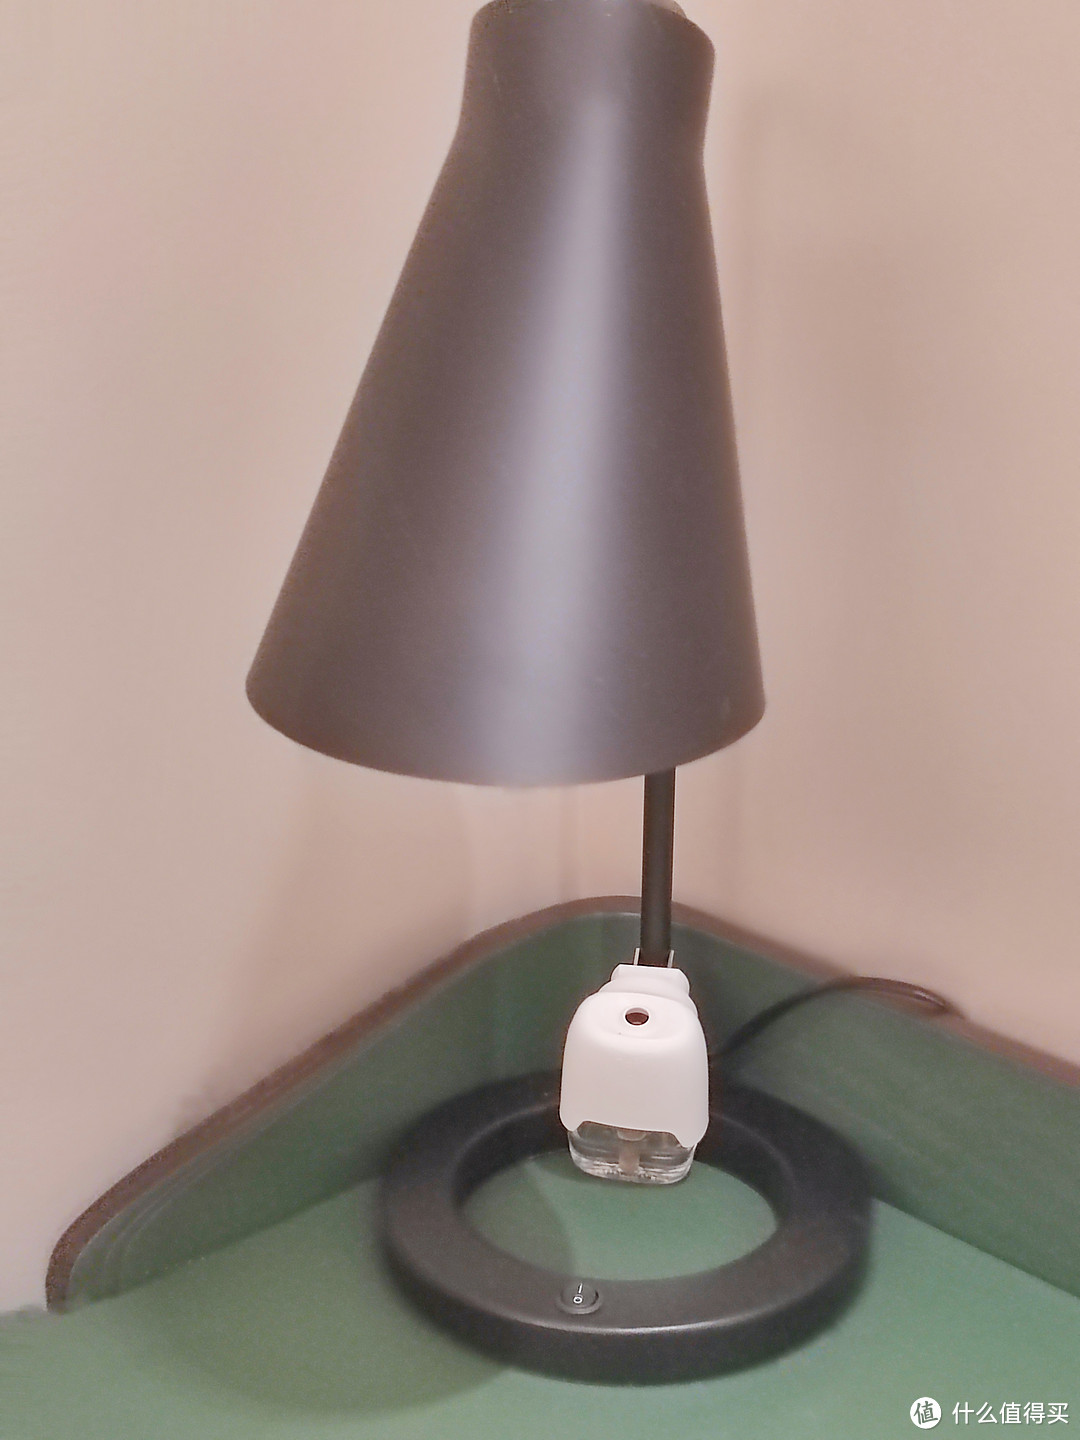 装饰台灯这种家用小电器维护起来很简单，使用起来体验也不错